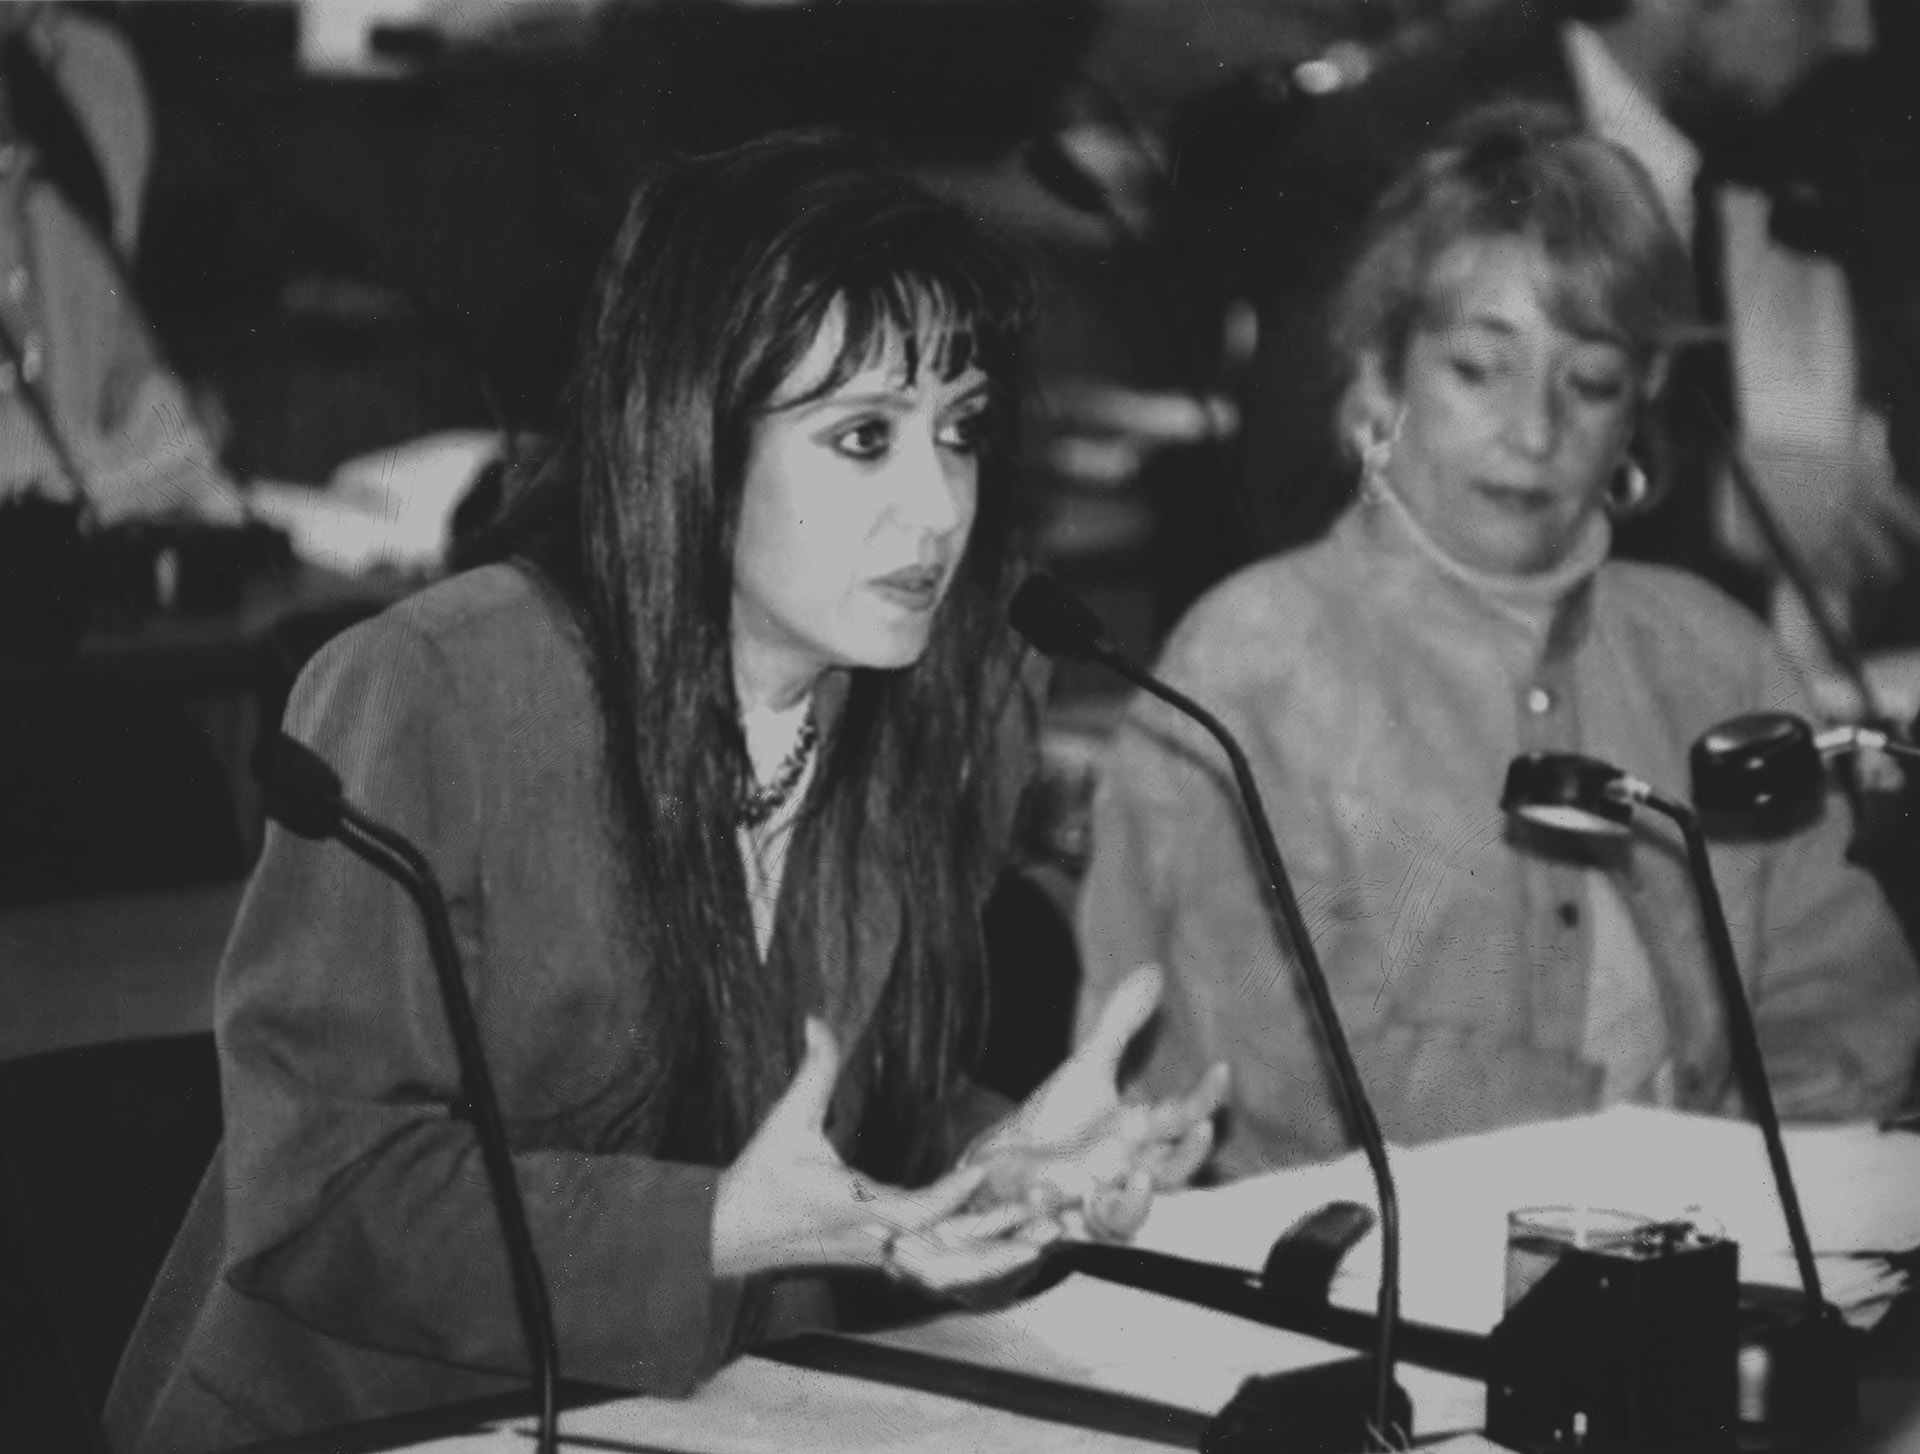 Cristina Kirchner, entonces diputada por Santa Cruz, expone en la Asamblea Constituyente de 1994, que fijó plazo hasta 1996 para sancionar una nueva ley de Coparticipación Federal, en reemplazo del "Régimen Transitorio" sancionado en 1988